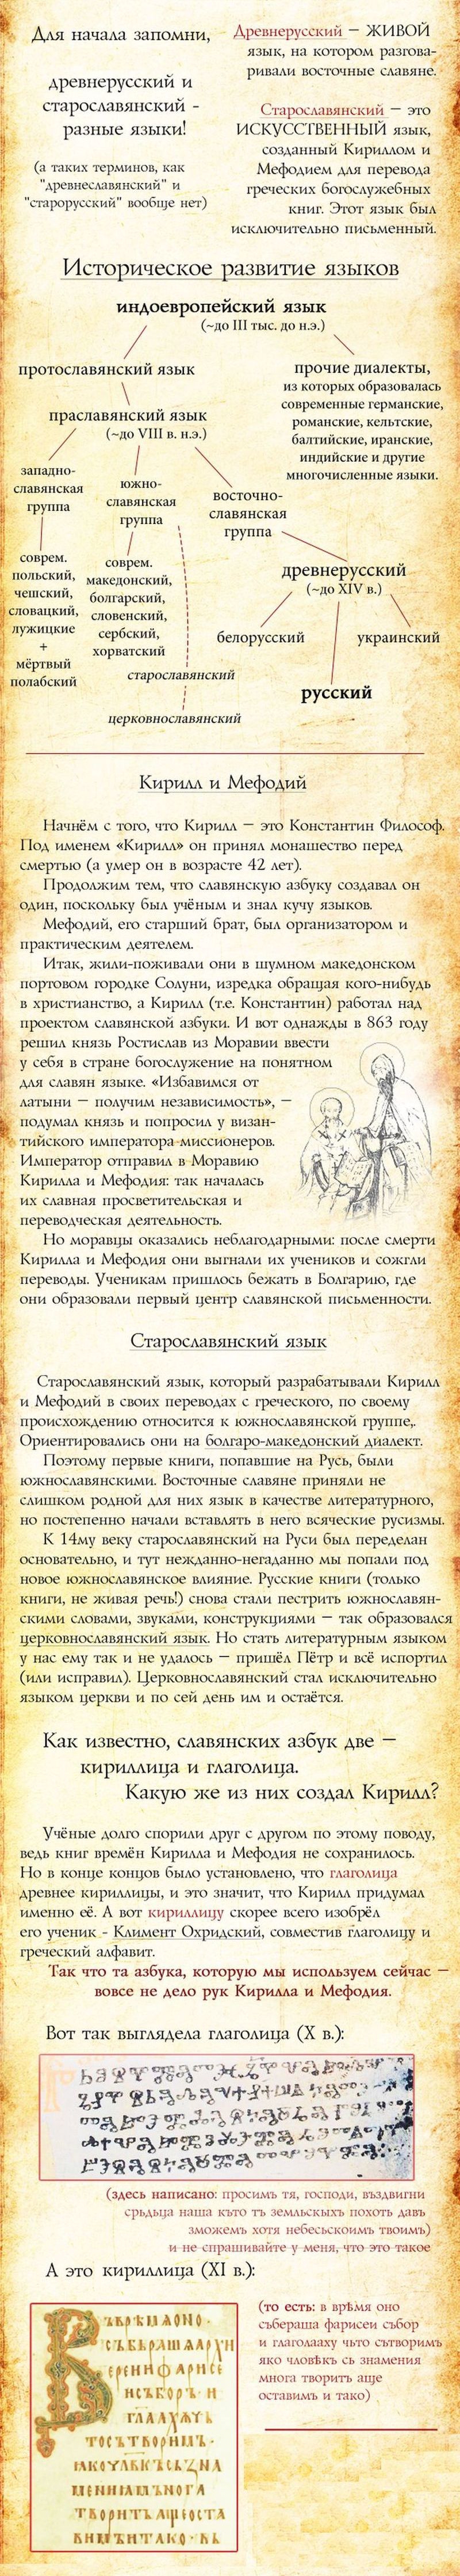 Русский язык и его история